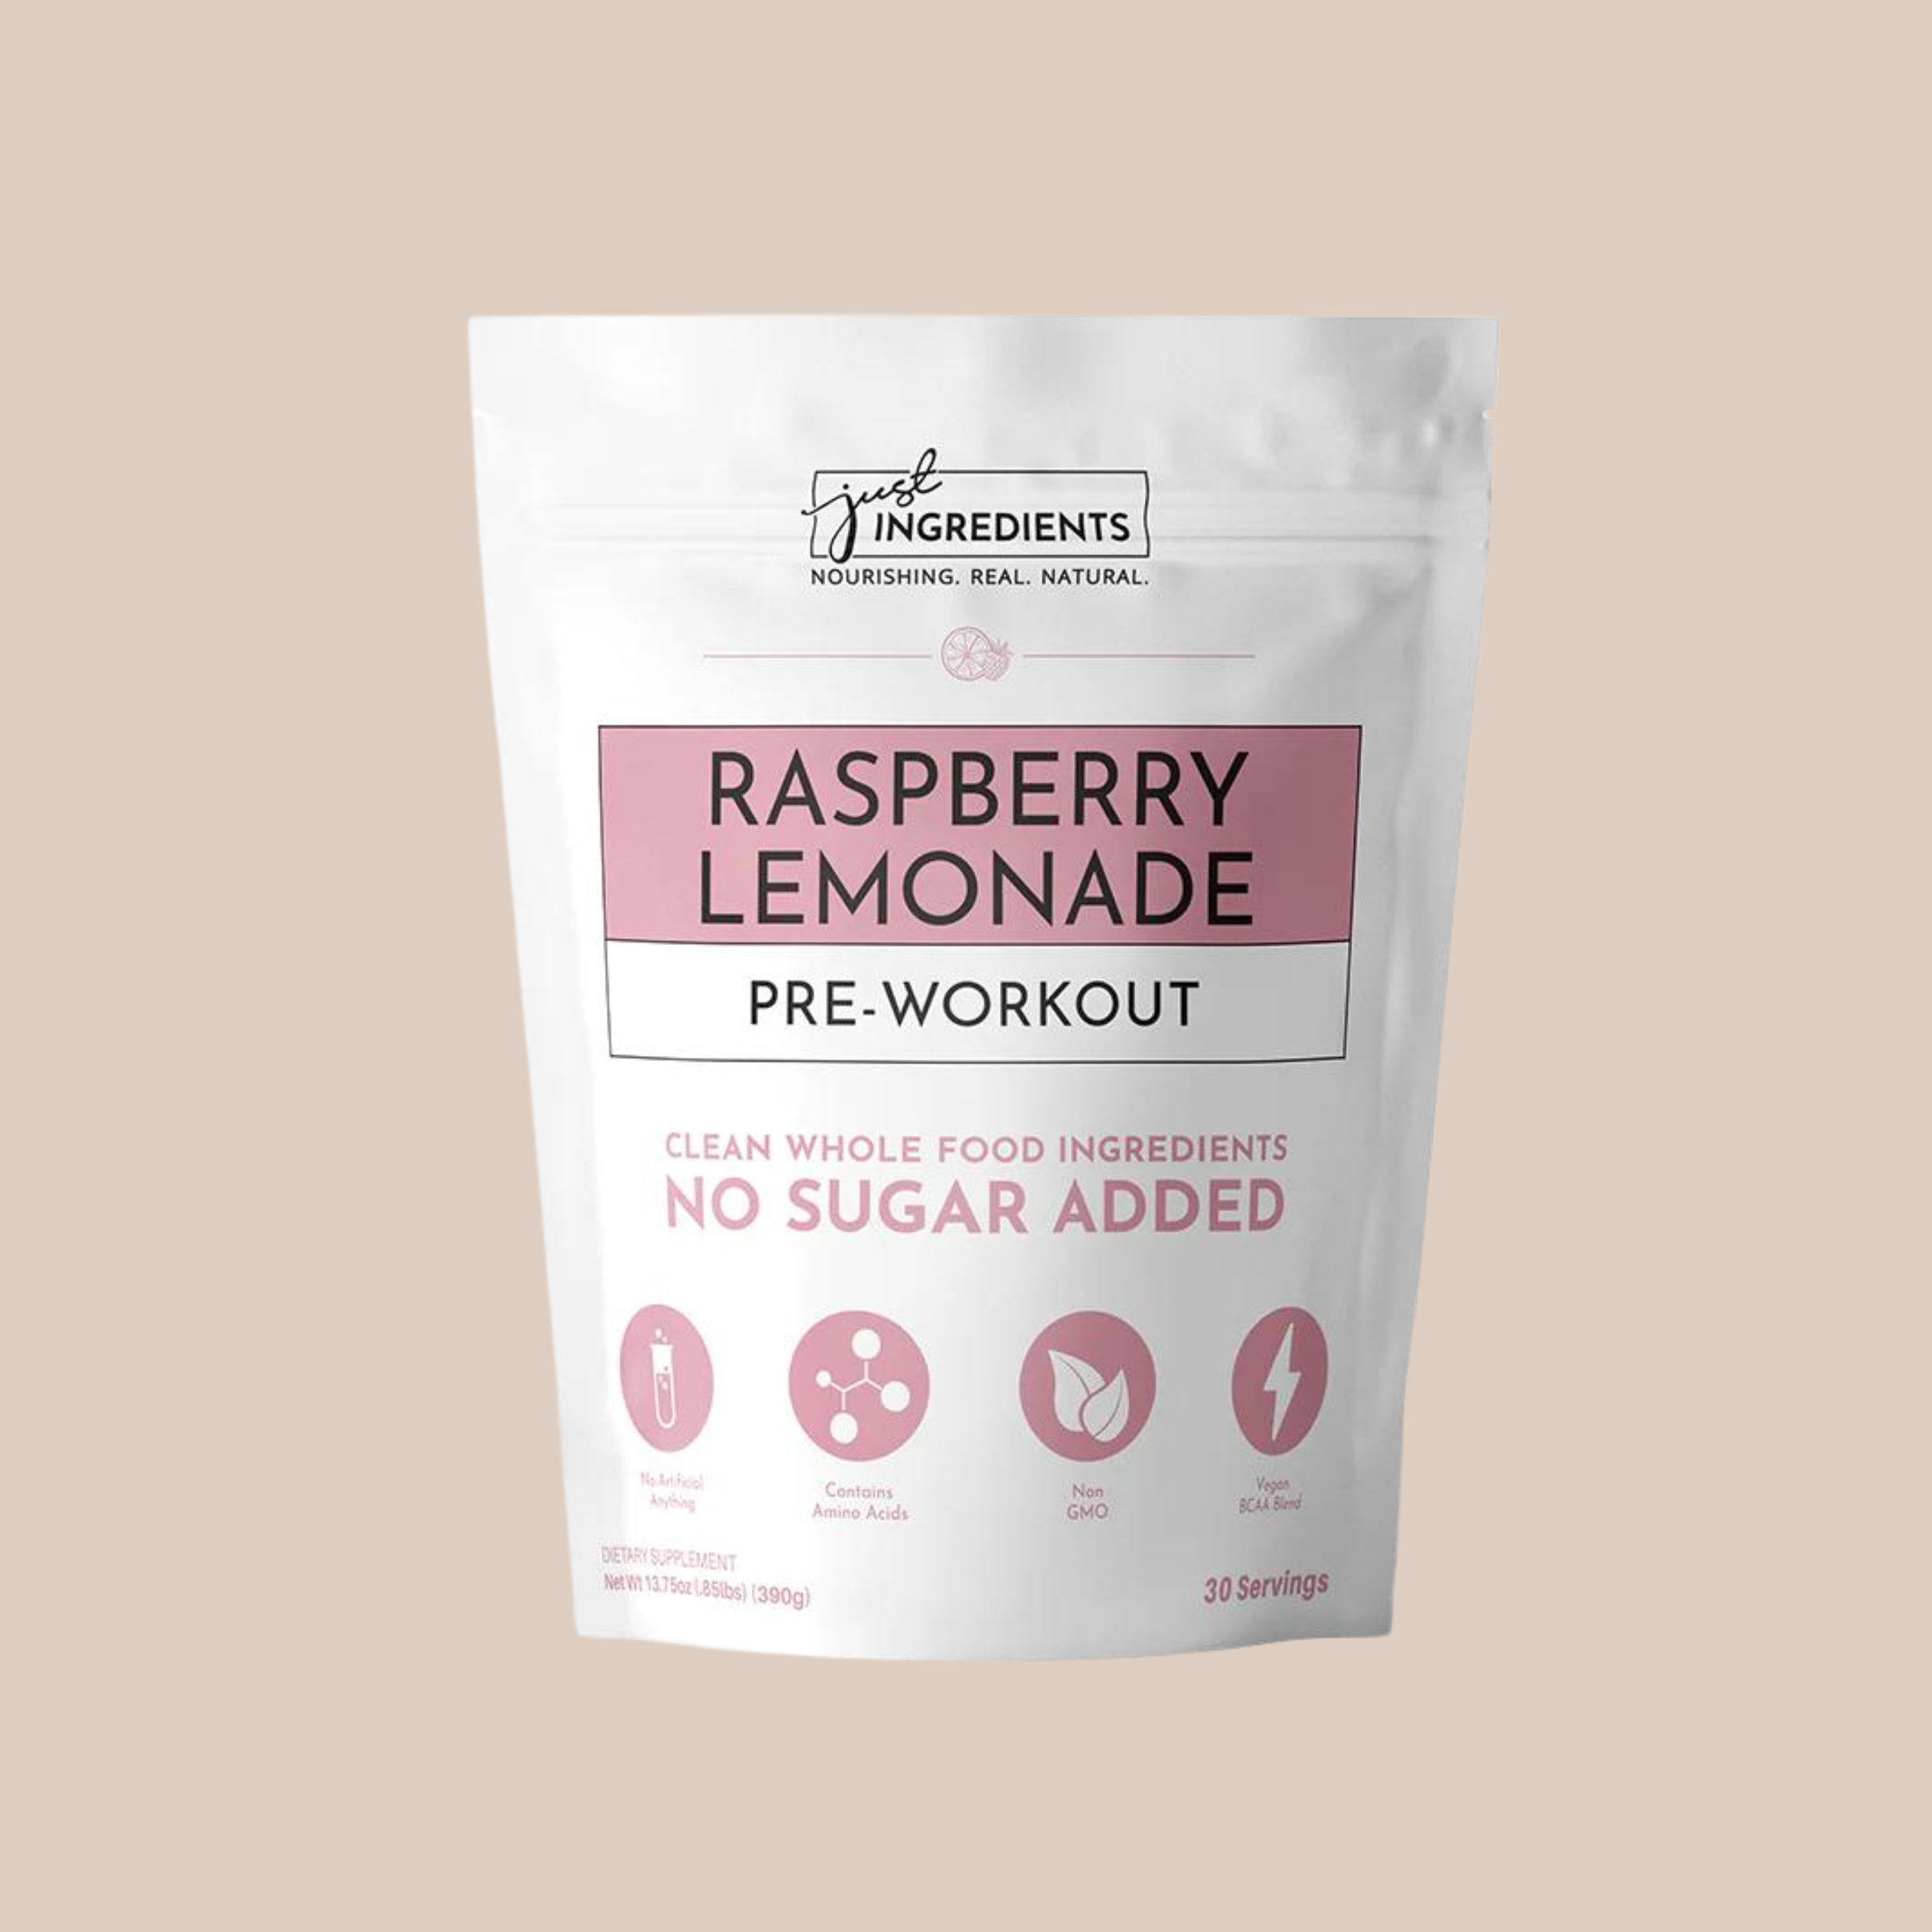 Raspberry Lemonade Pre-Workout